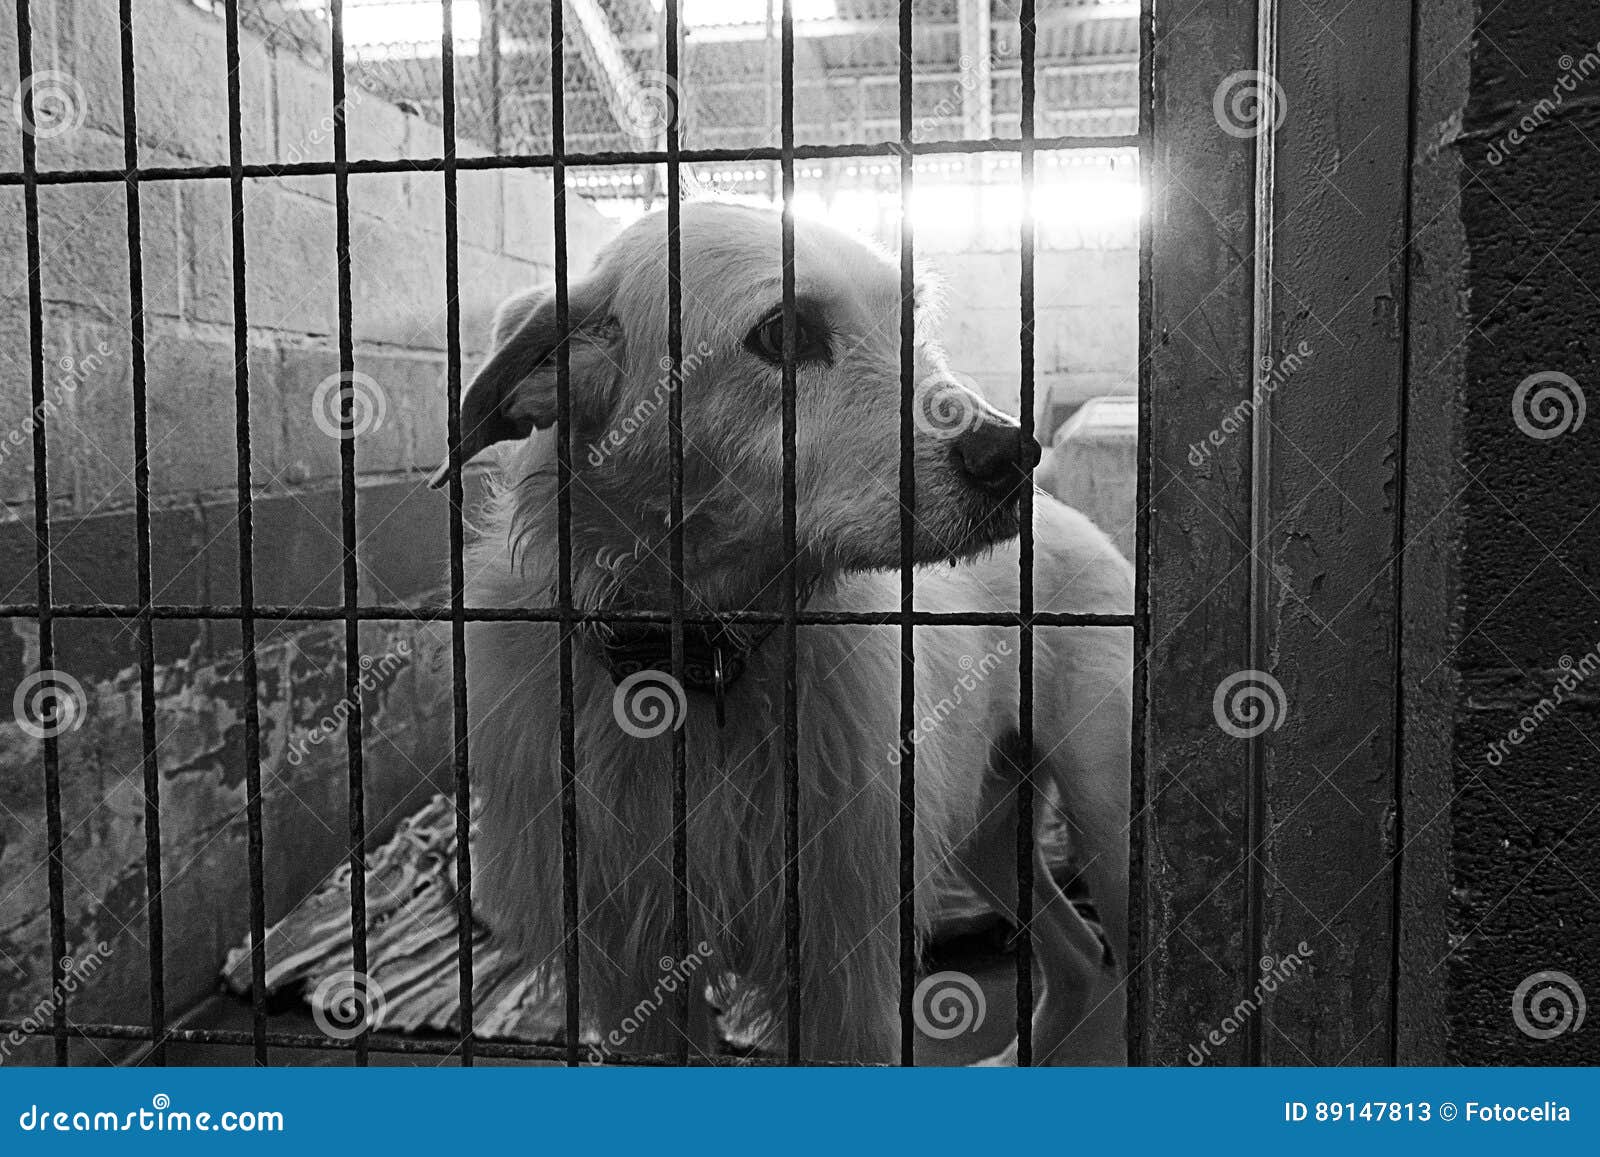 Sad abandoned dogs stock image. Image of lonely, pound - 89147813